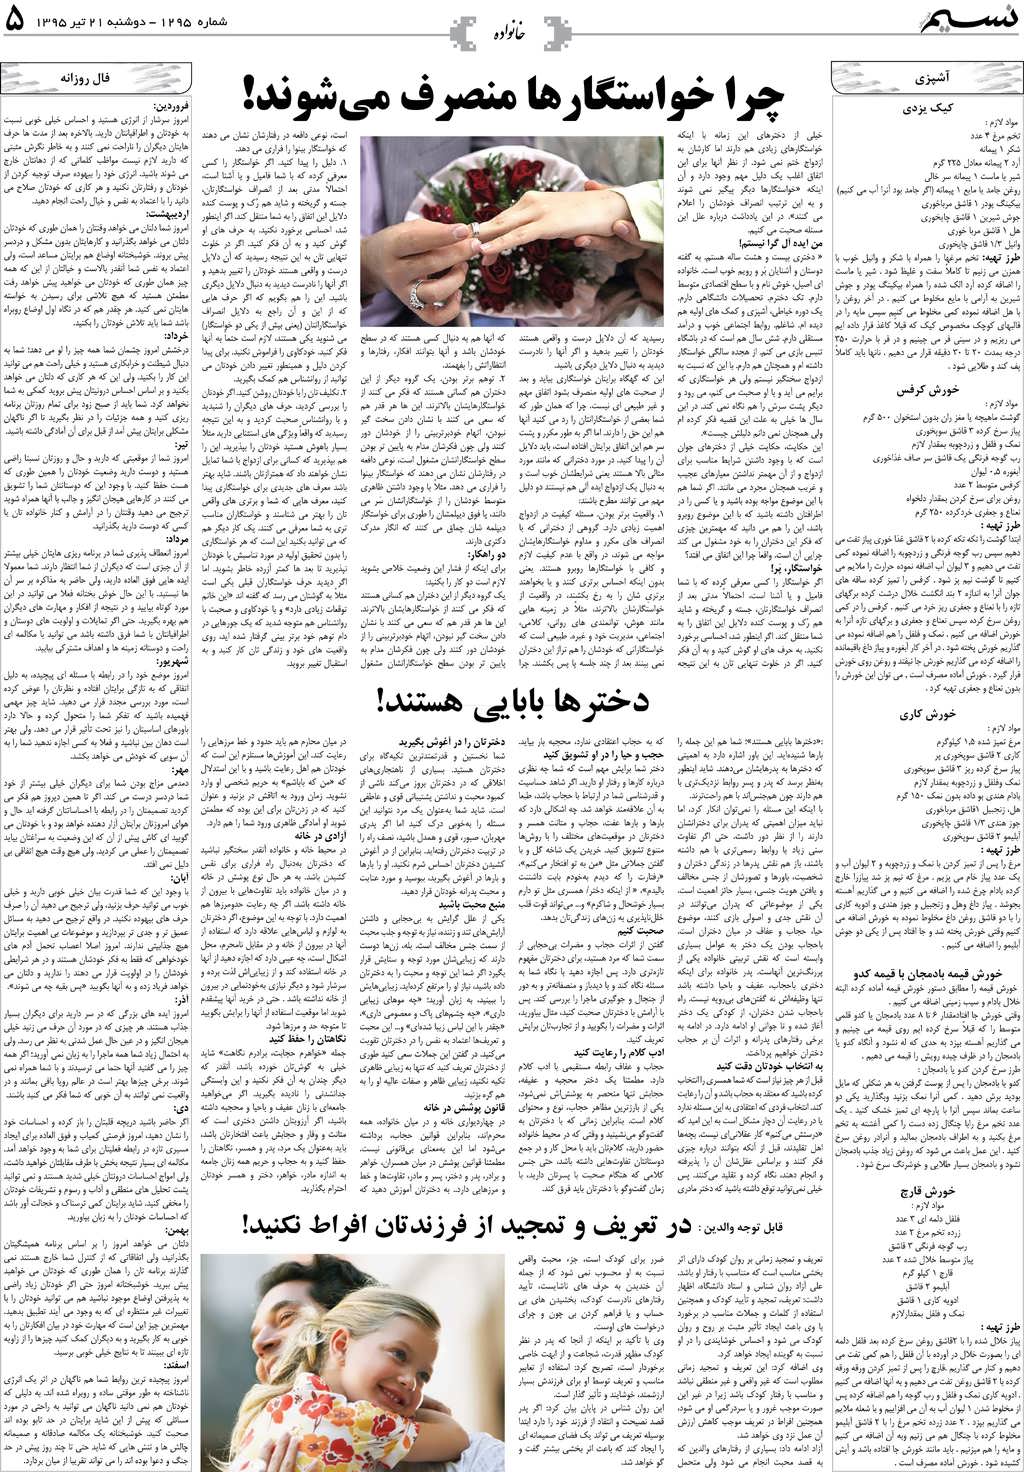 صفحه خانواده روزنامه نسیم شماره 1295